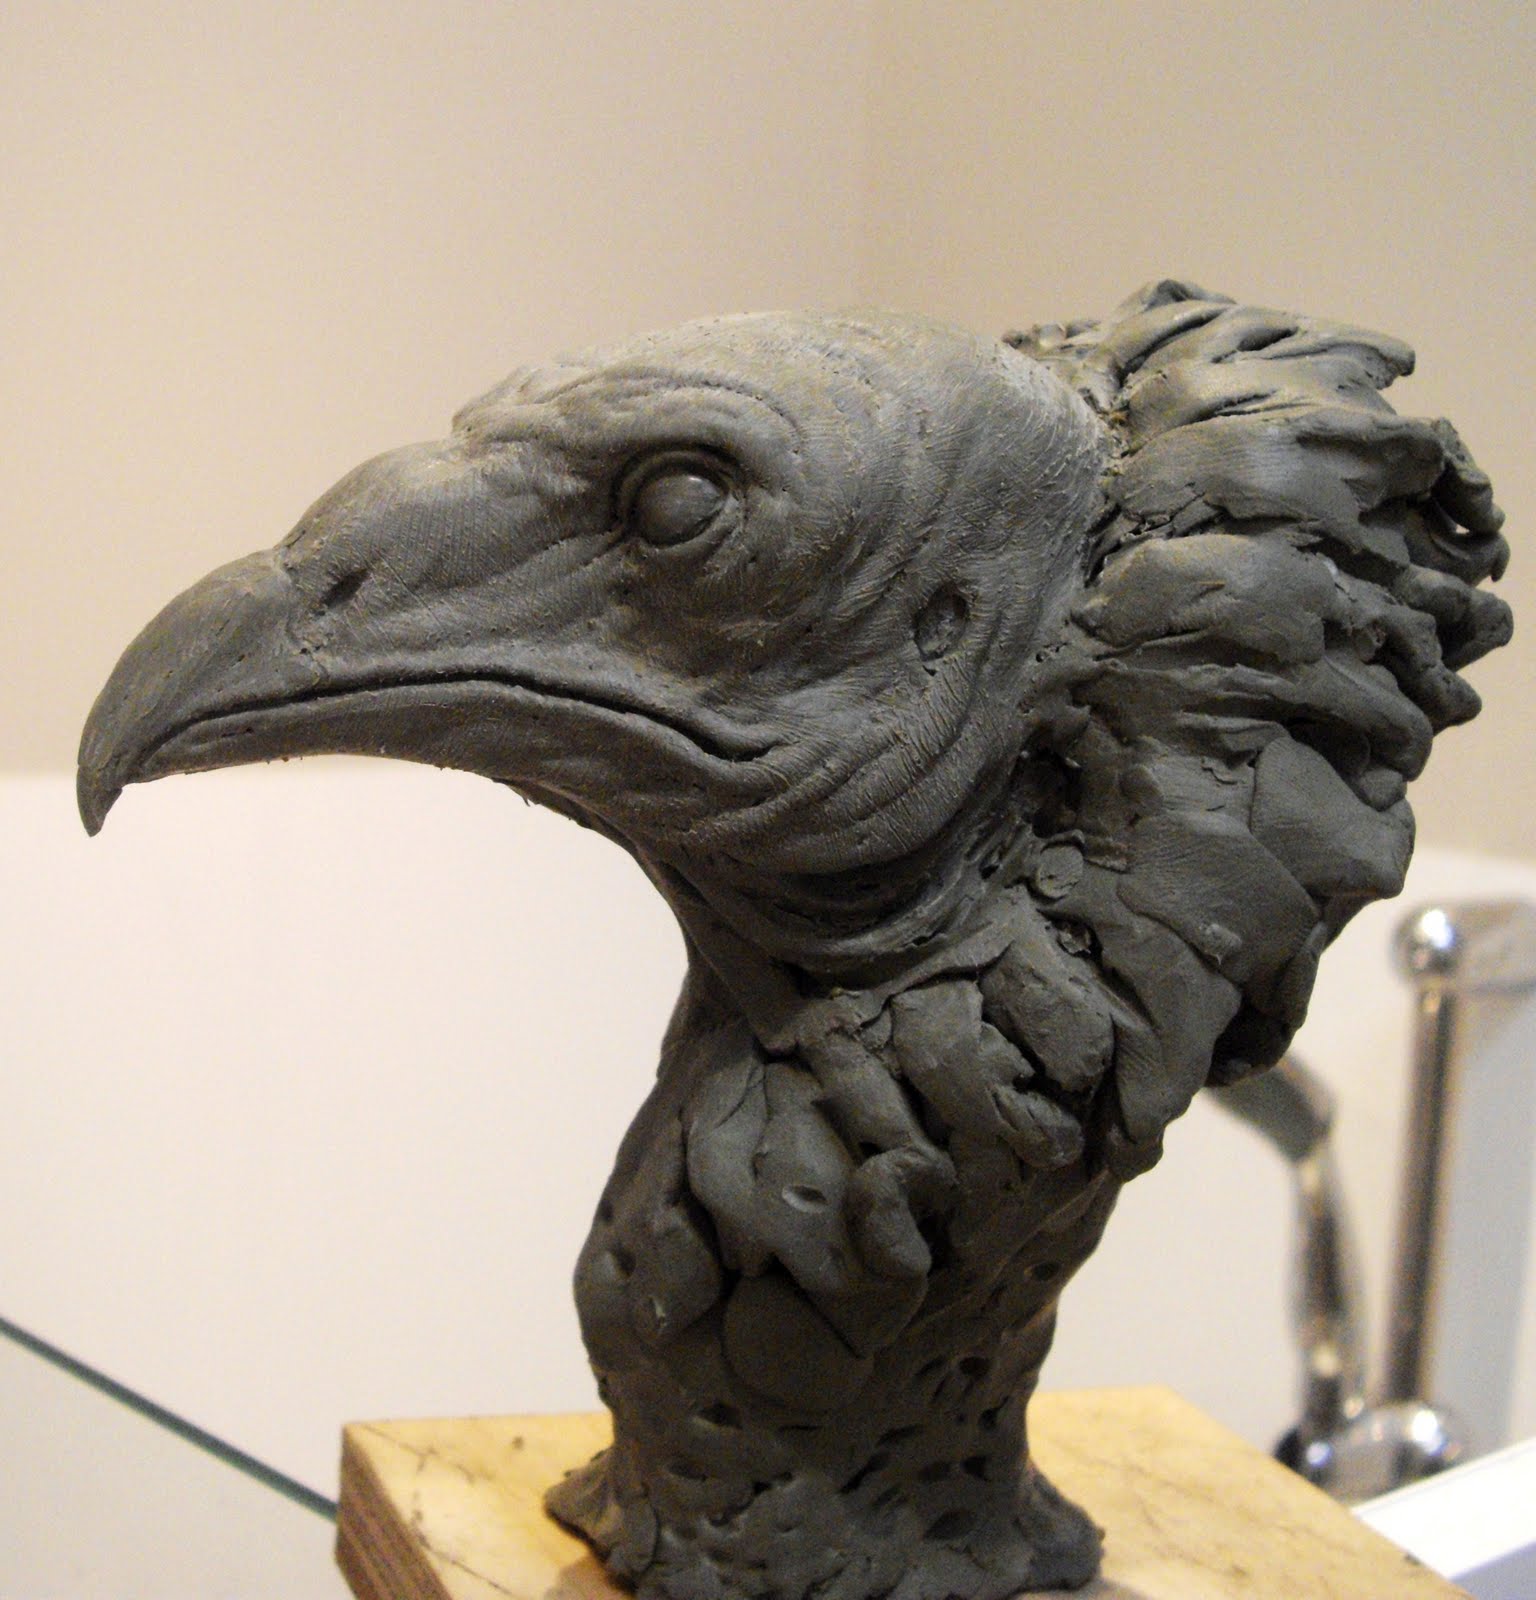 Aris Kolokontes art.: Vulture head WIP. UPDATED